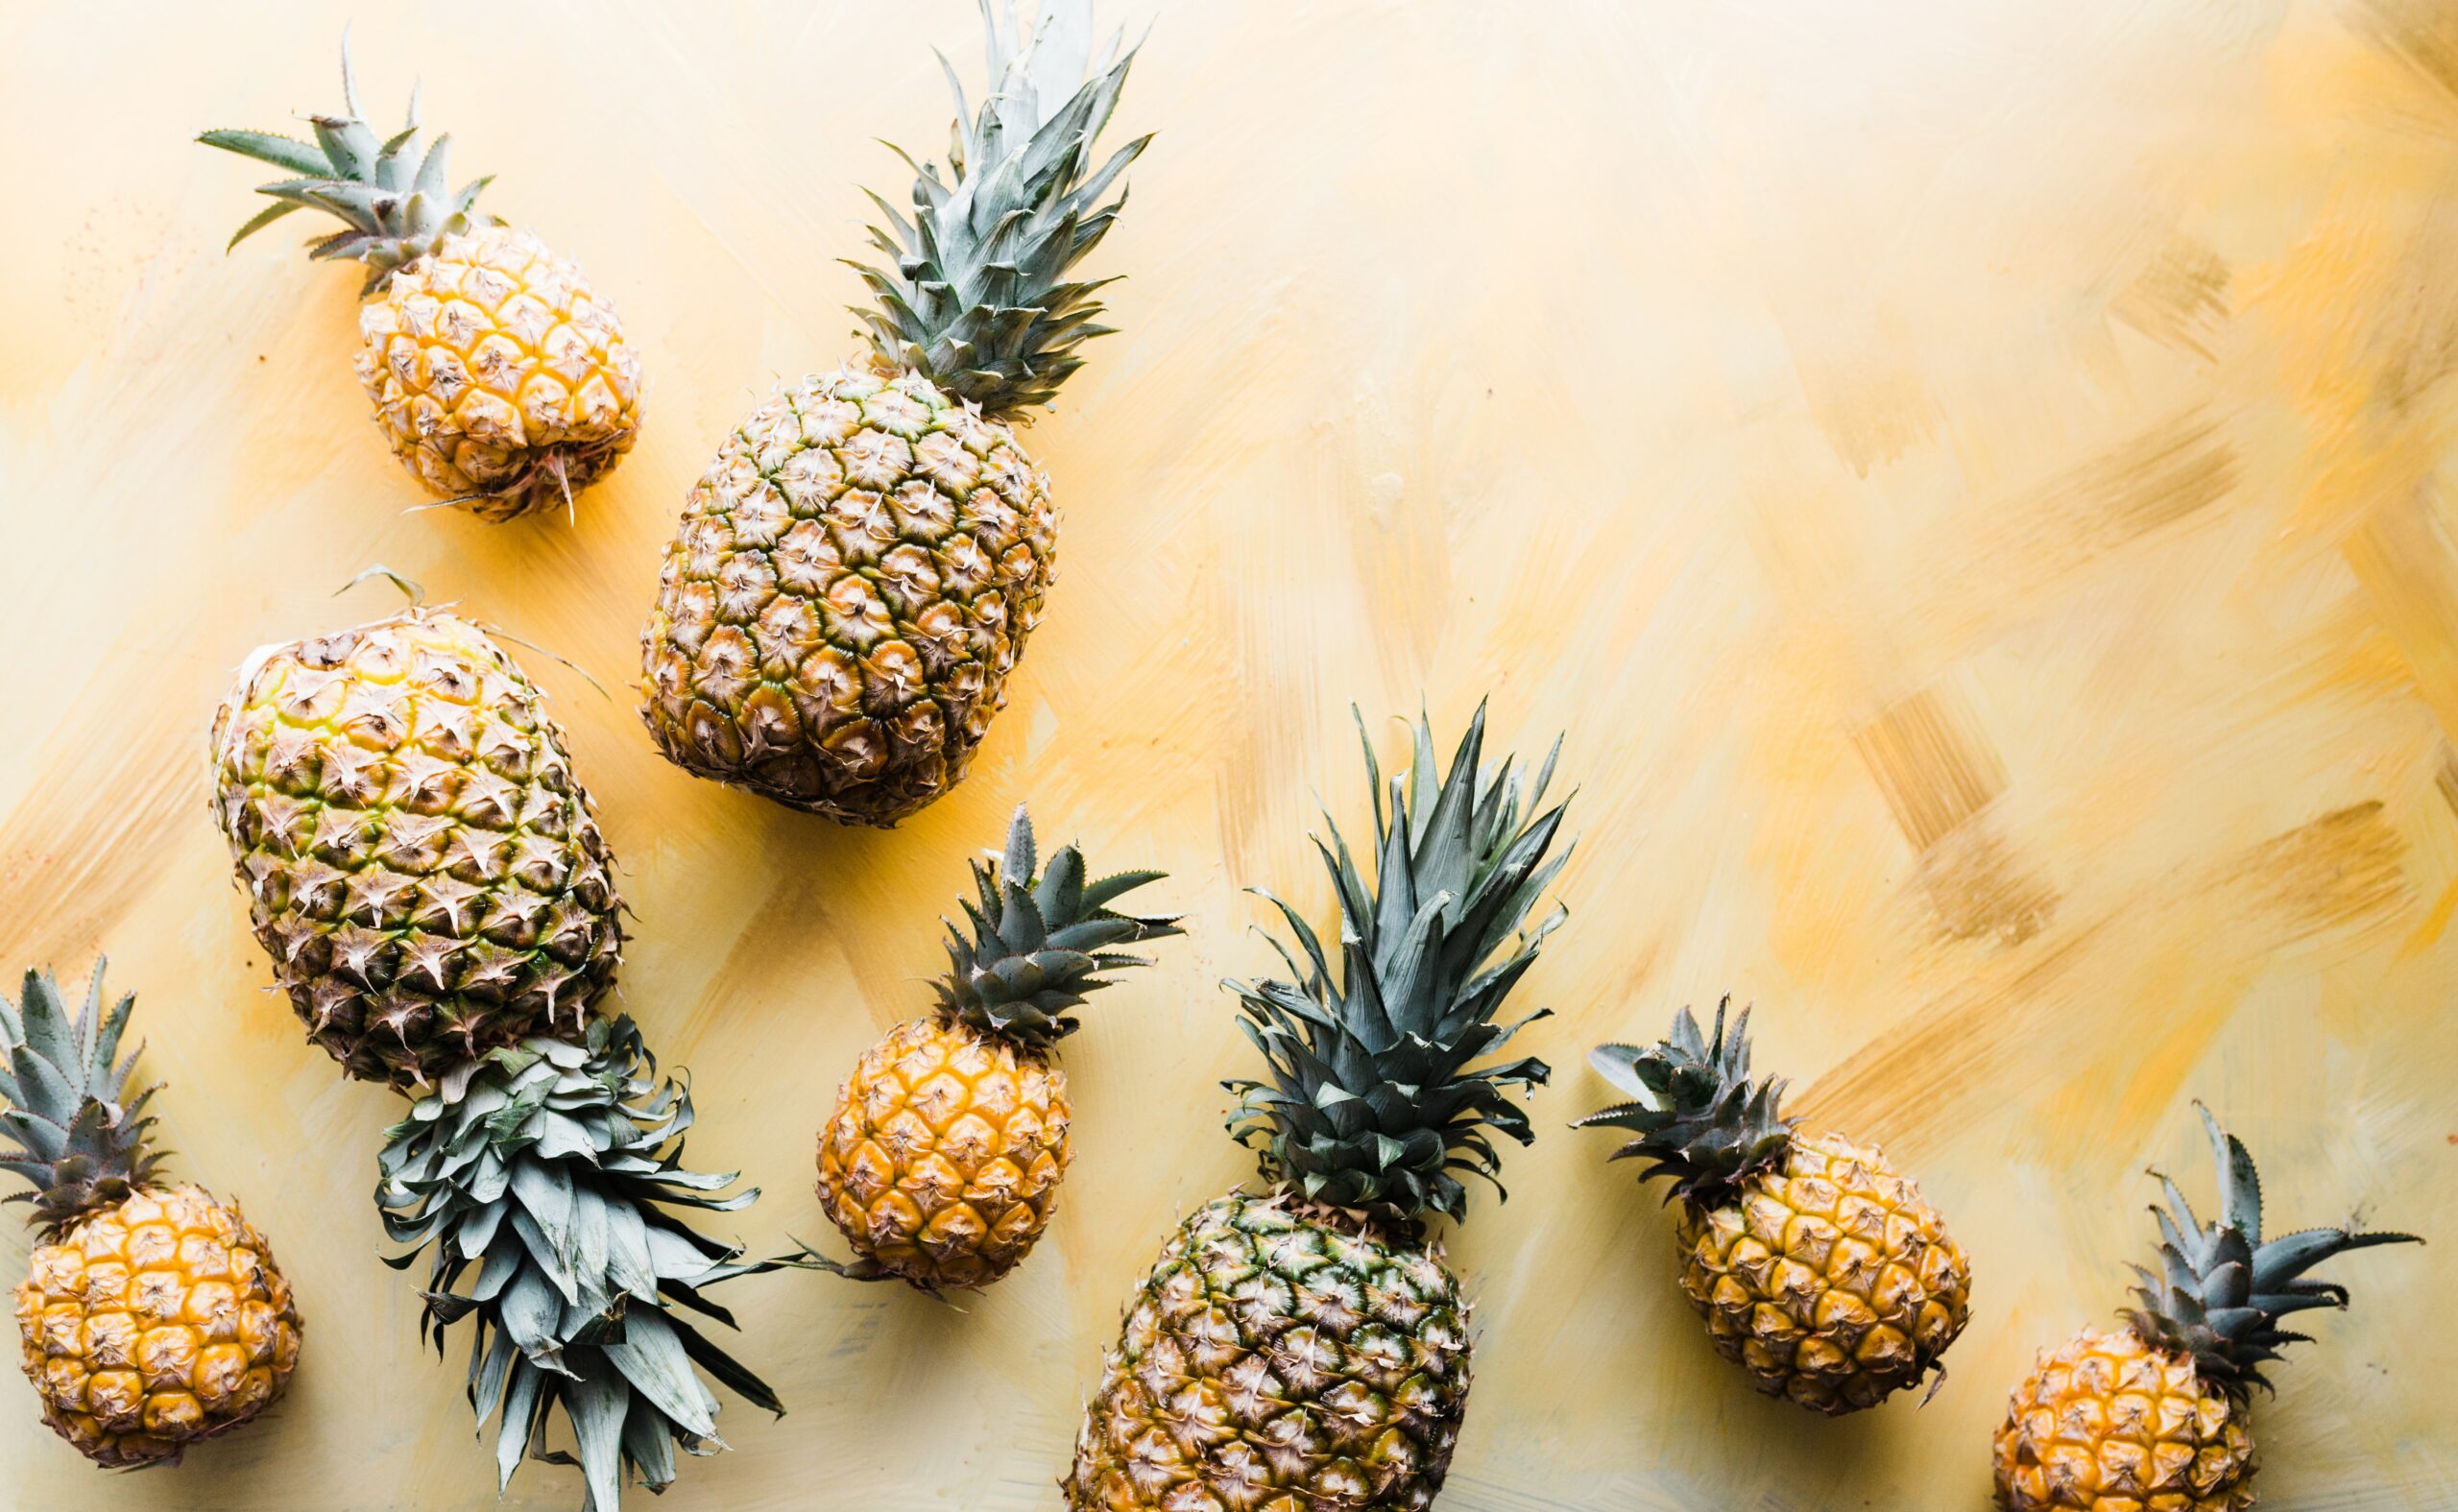 Obalový materiál z listů ananasu udrží potraviny čerstvé a čistí odpadní vodu